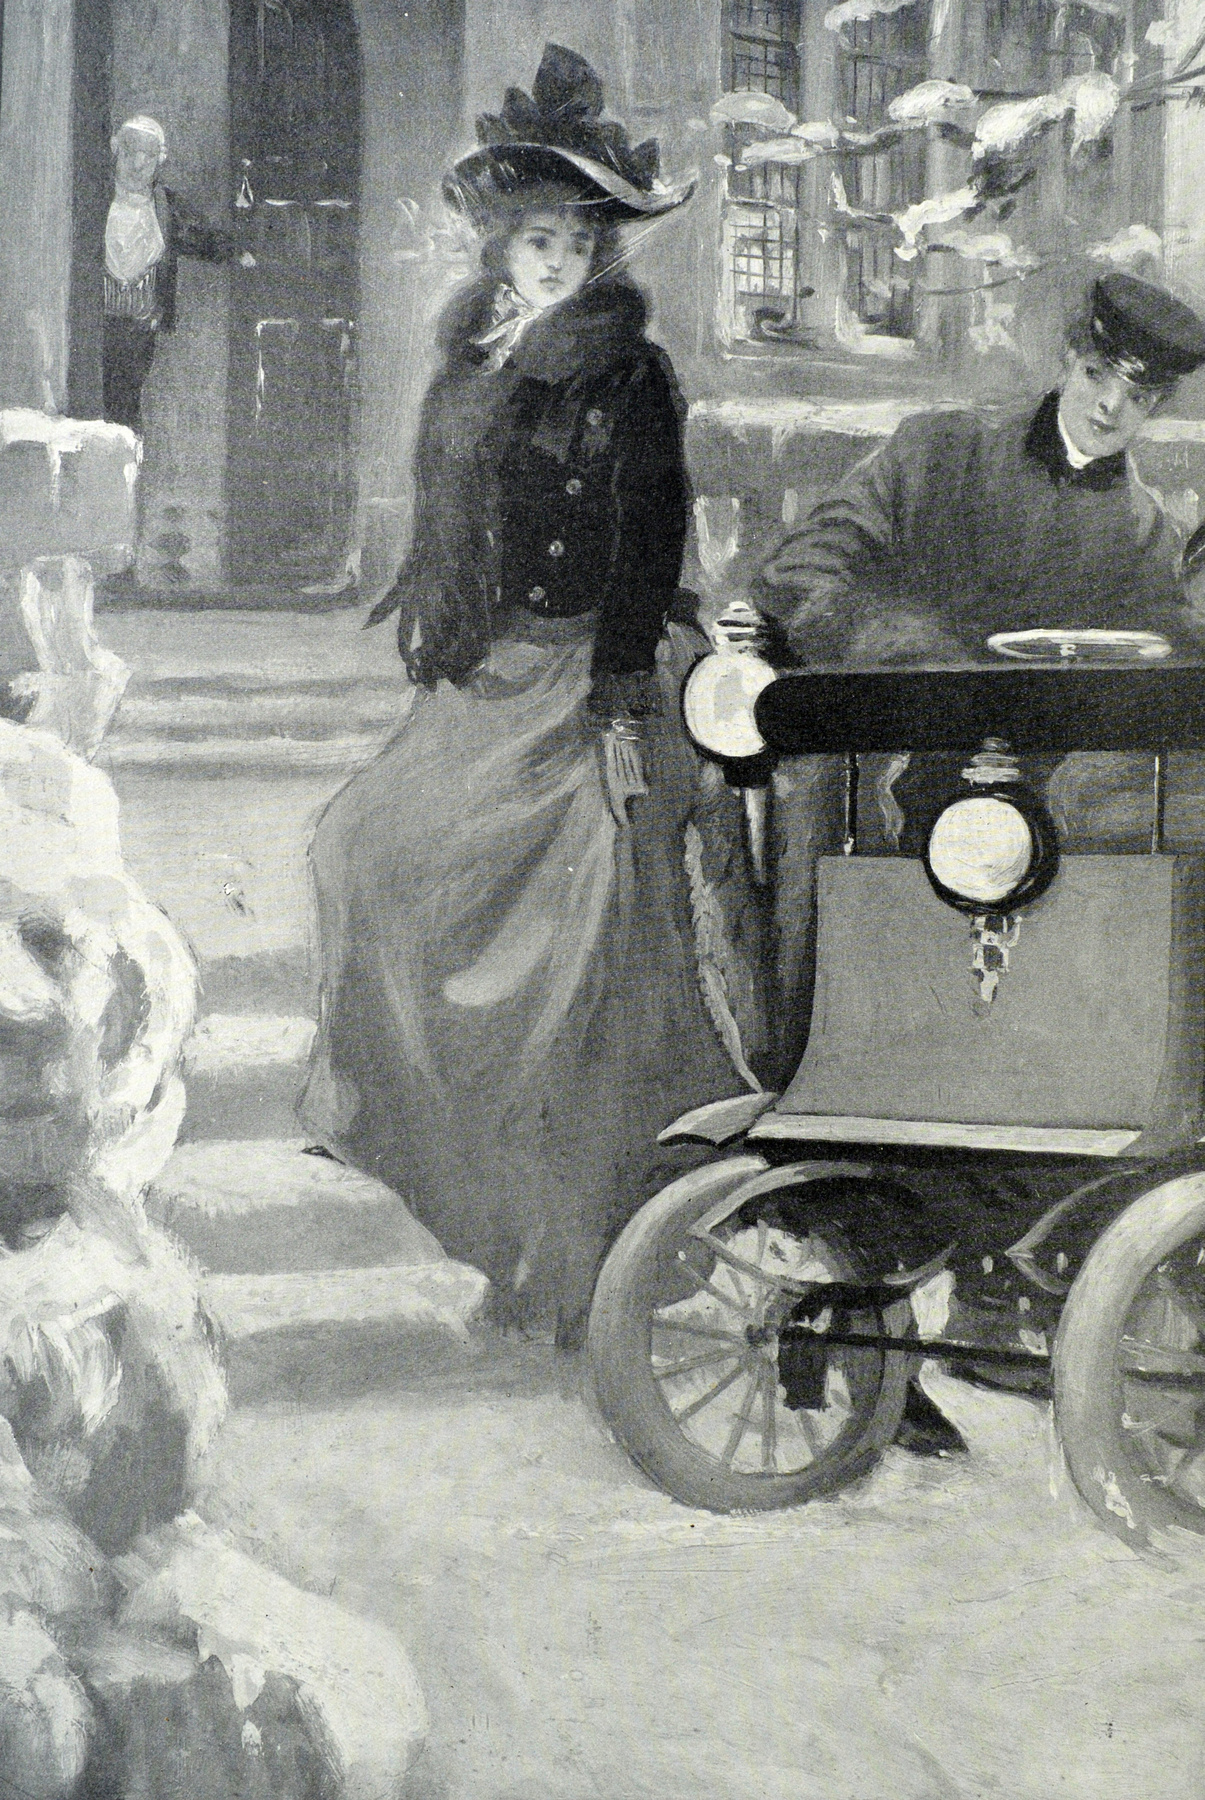 Sőt, az 1907-es 6. Nemzetközi Motor kiállítást is nővel promotálták Angliában.


